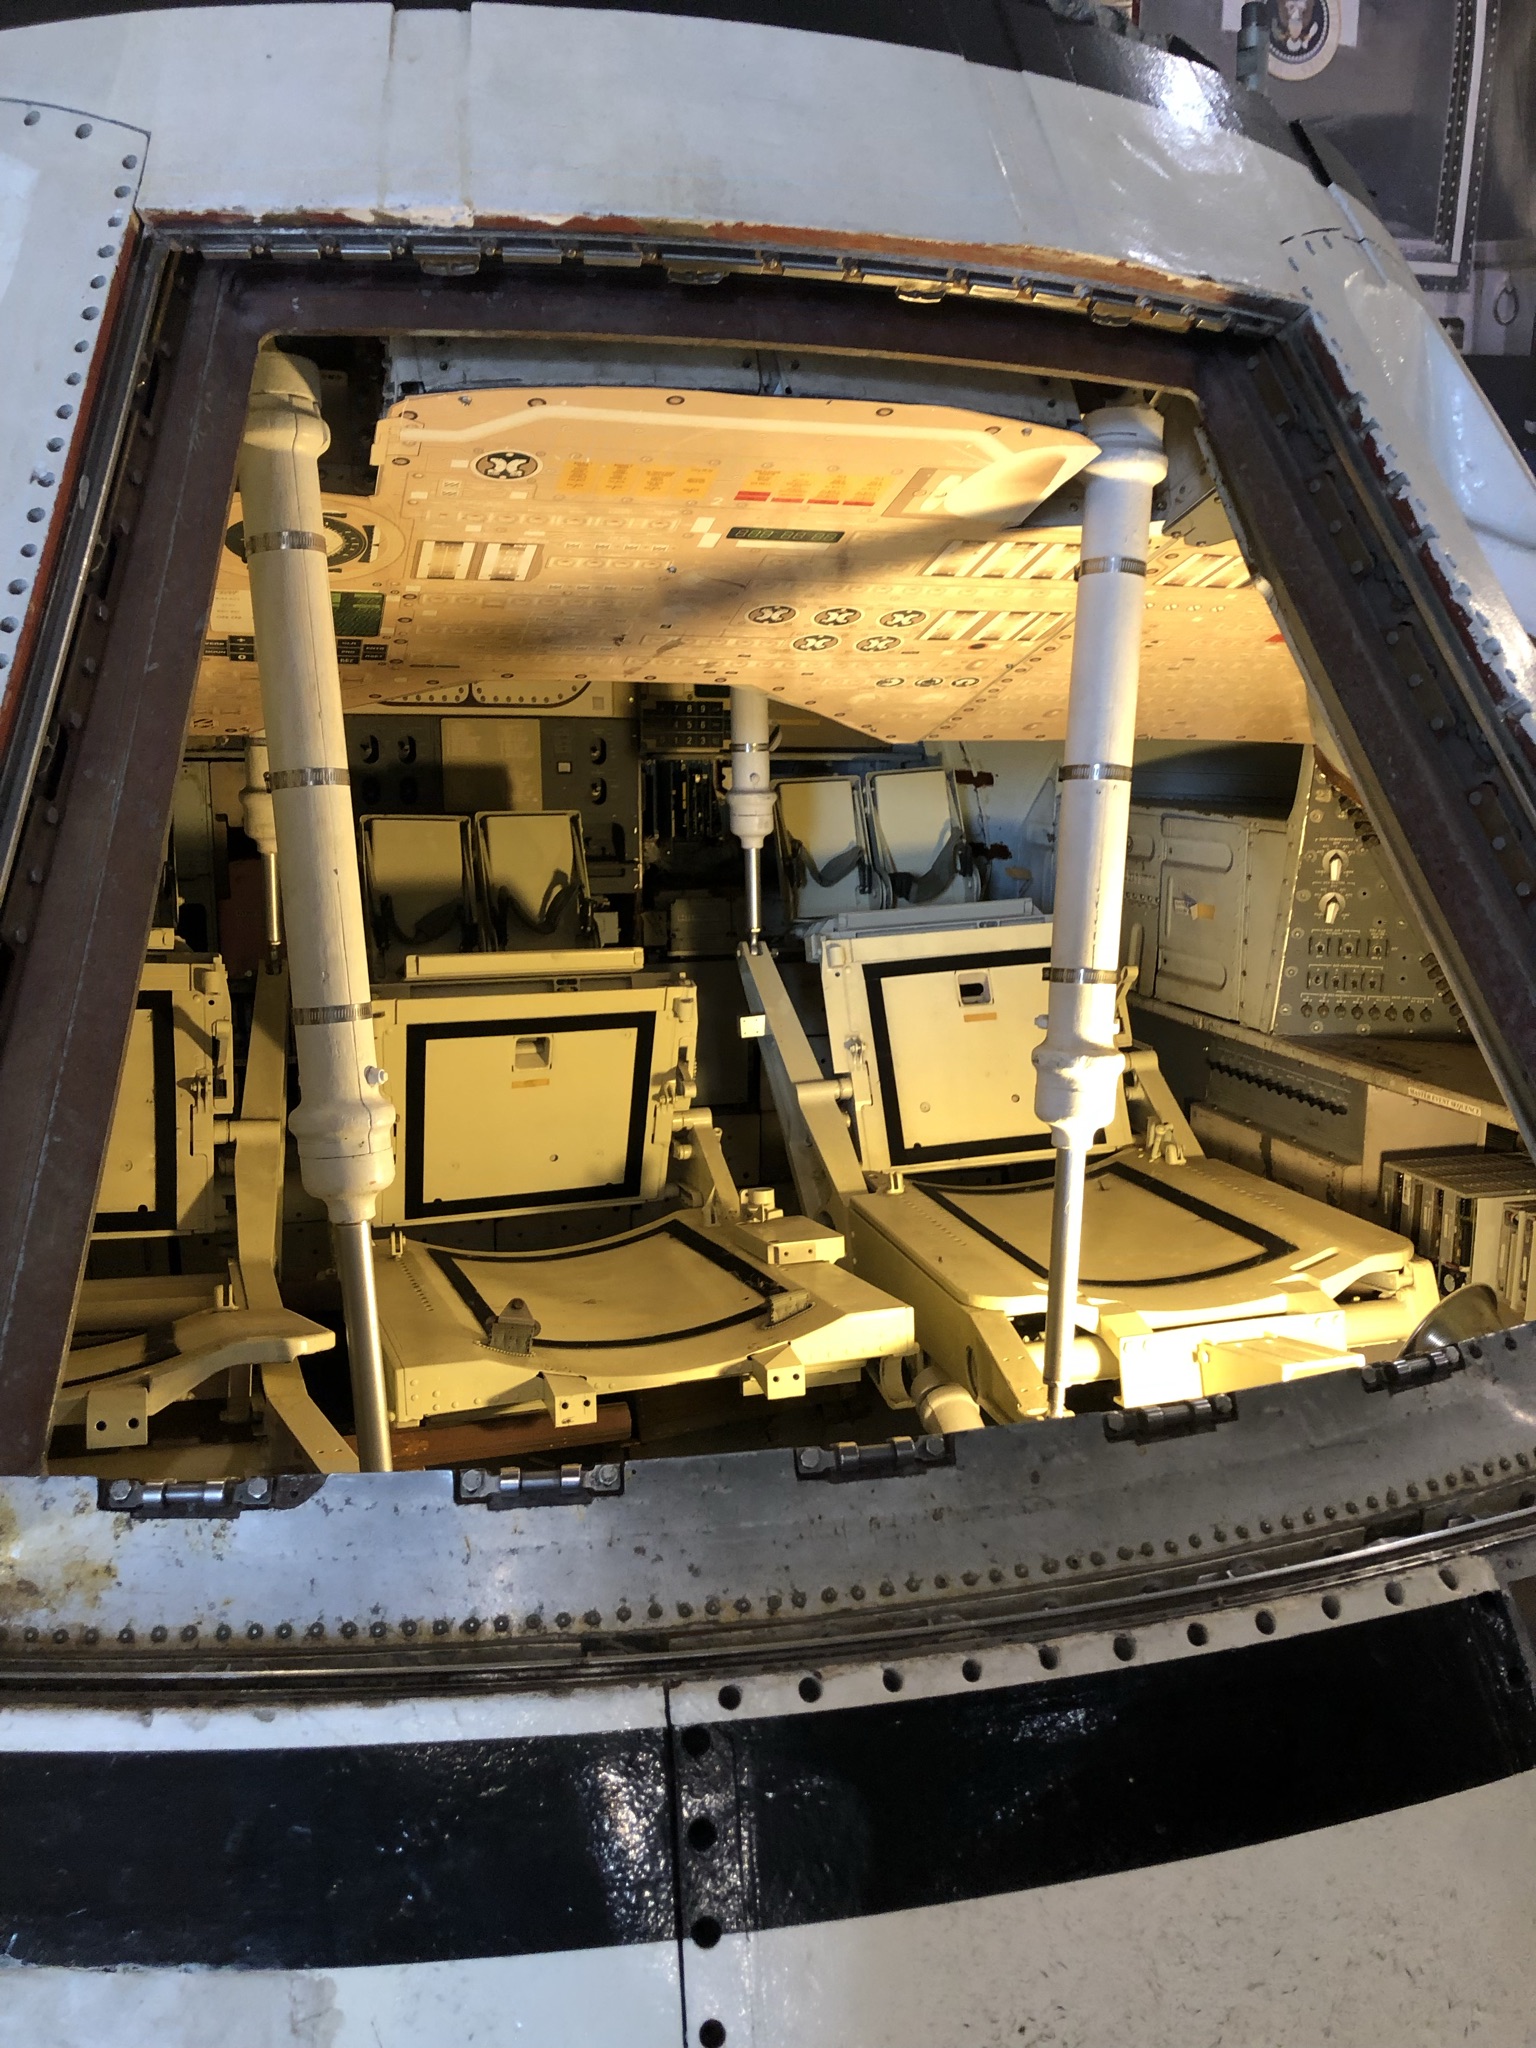 阿波罗登月飞船回收舱